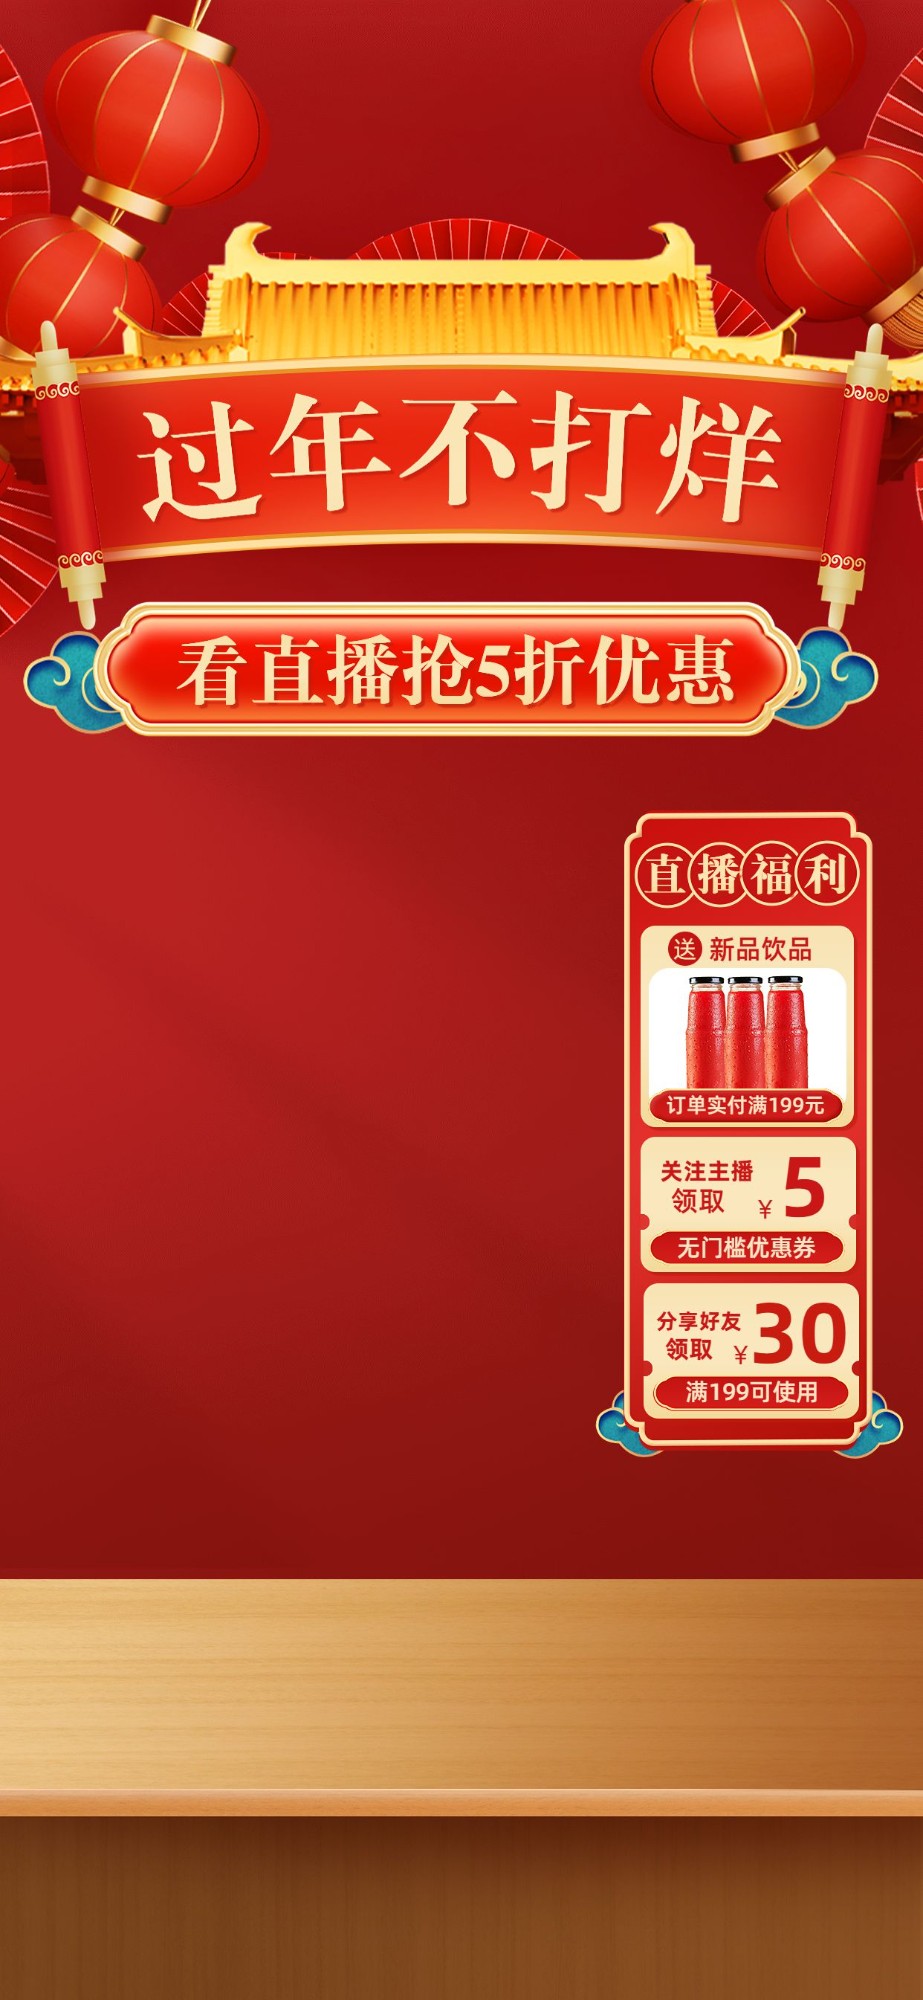 喜庆年货节春节不打烊食品直播背景贴片组合预览效果